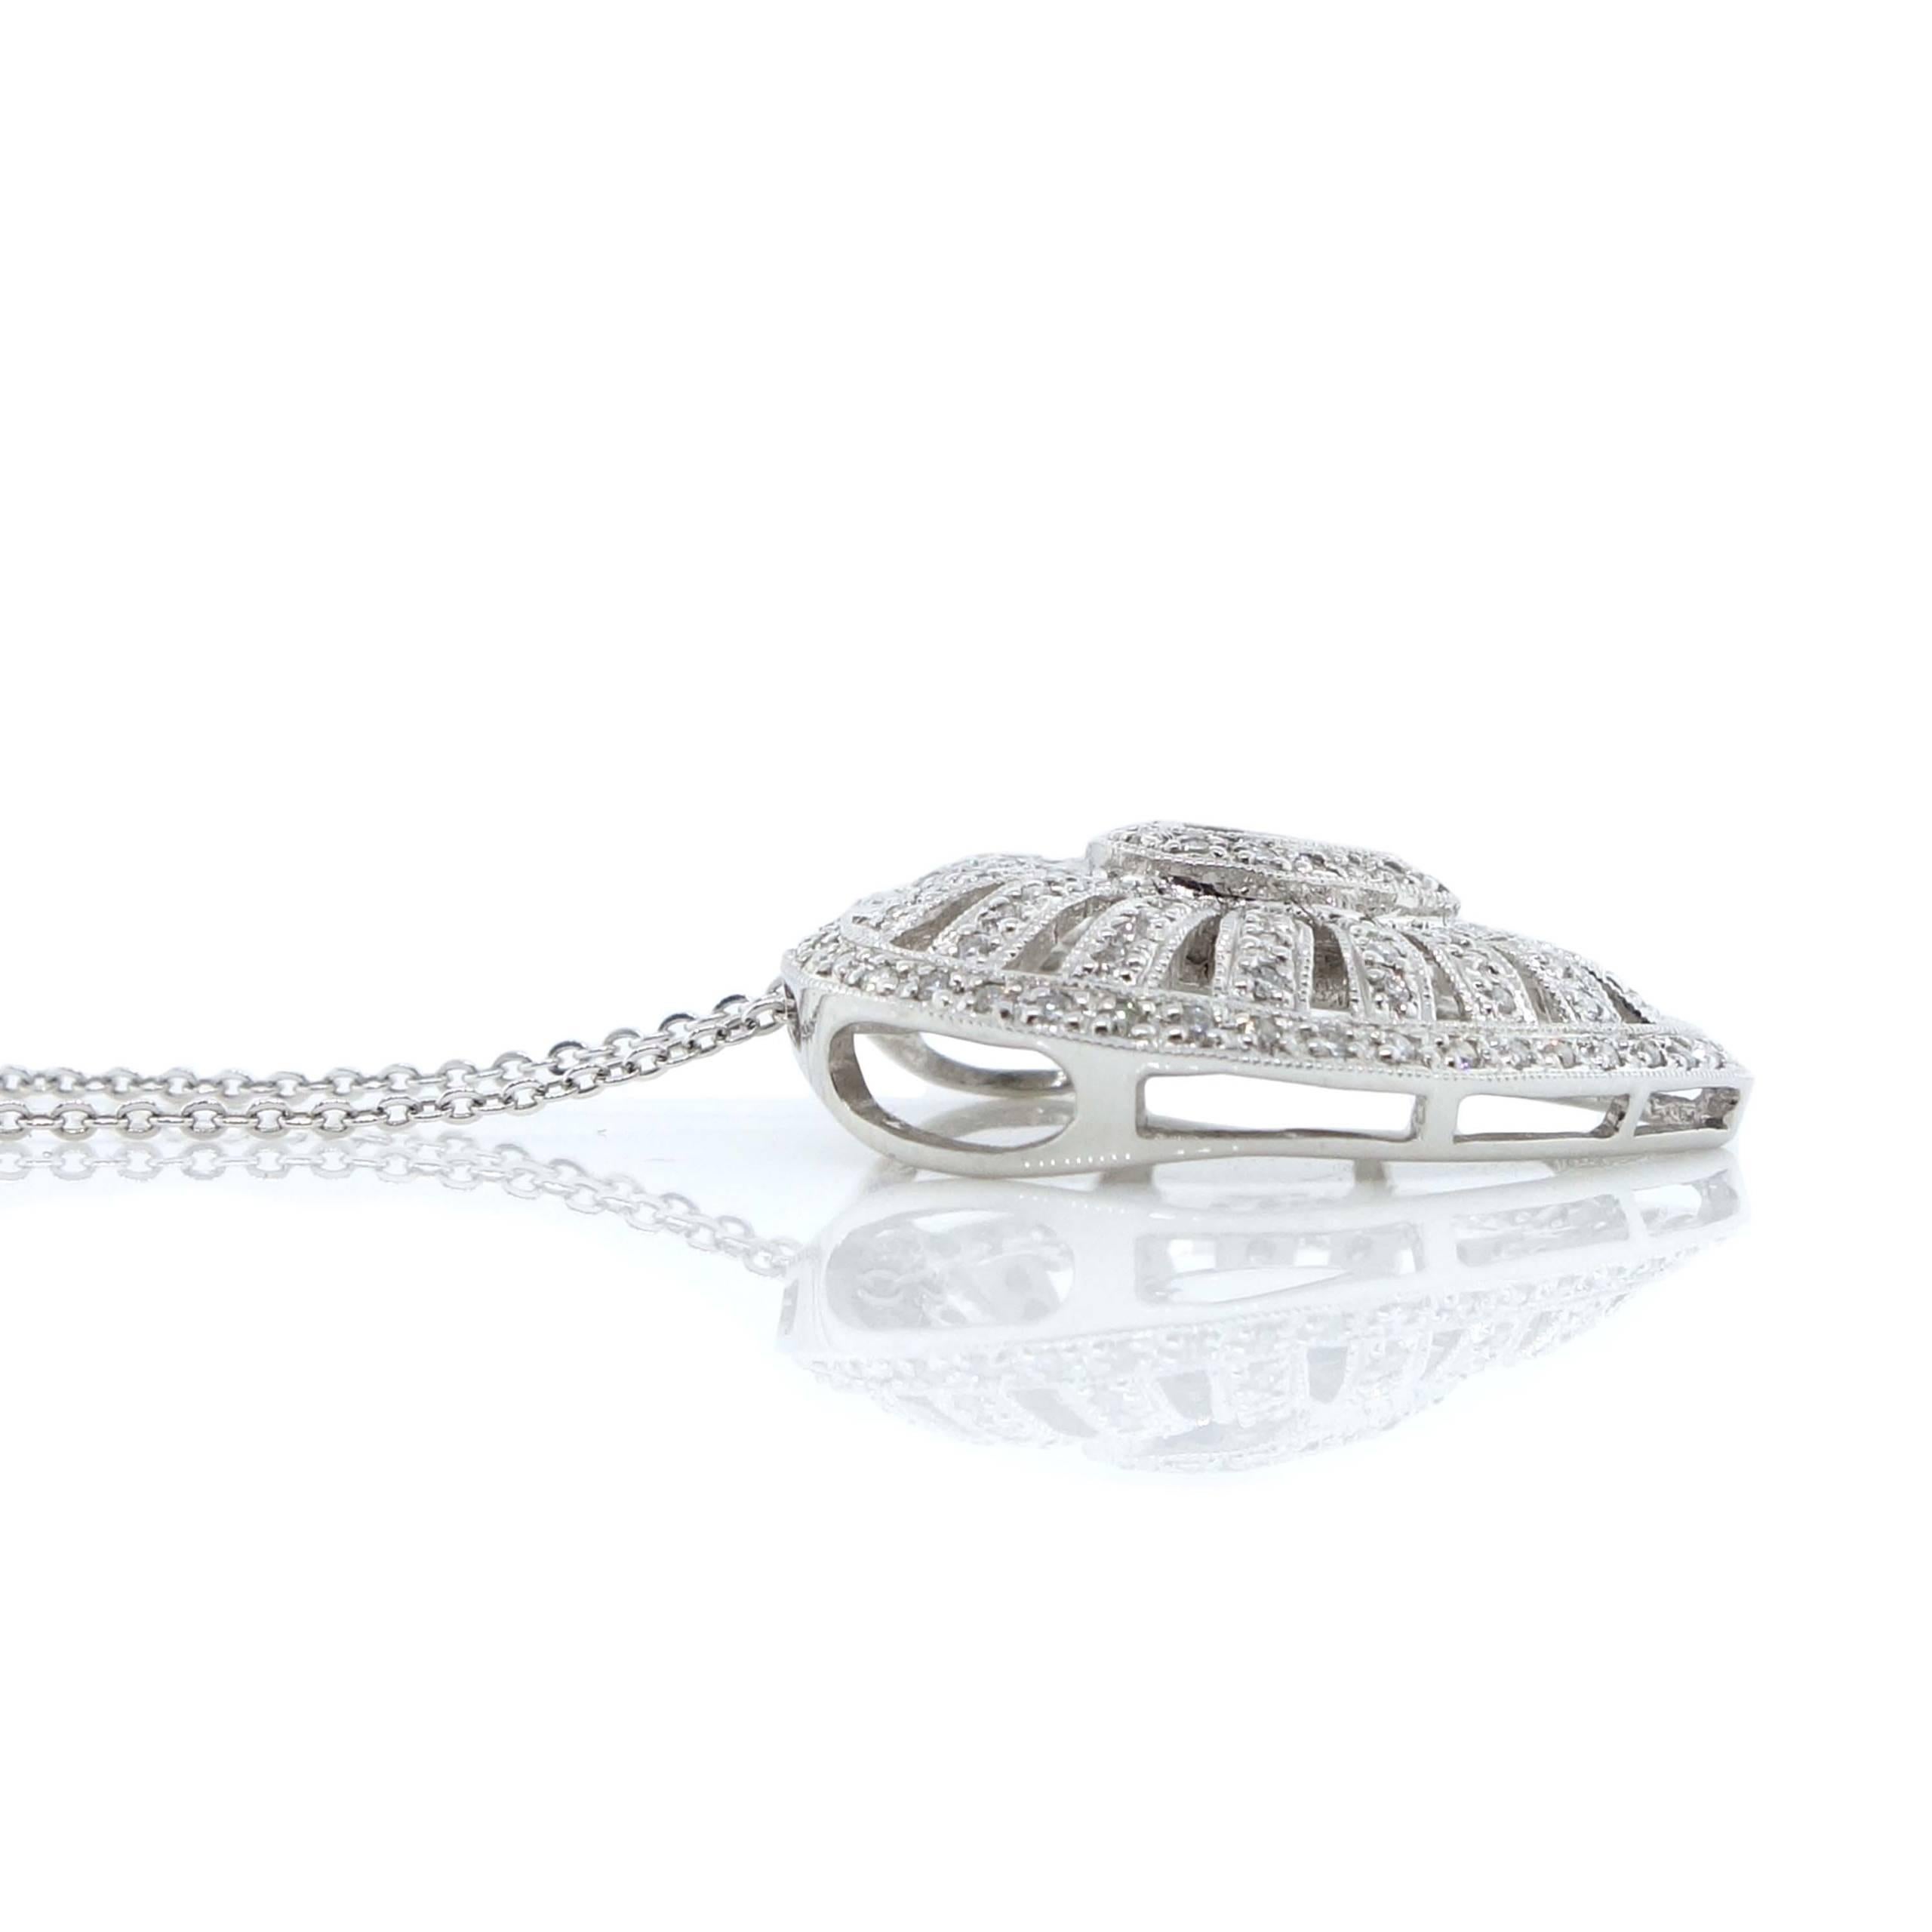 Brilliant Cut Heart Diamond Pendant in 18k White Gold For Sale